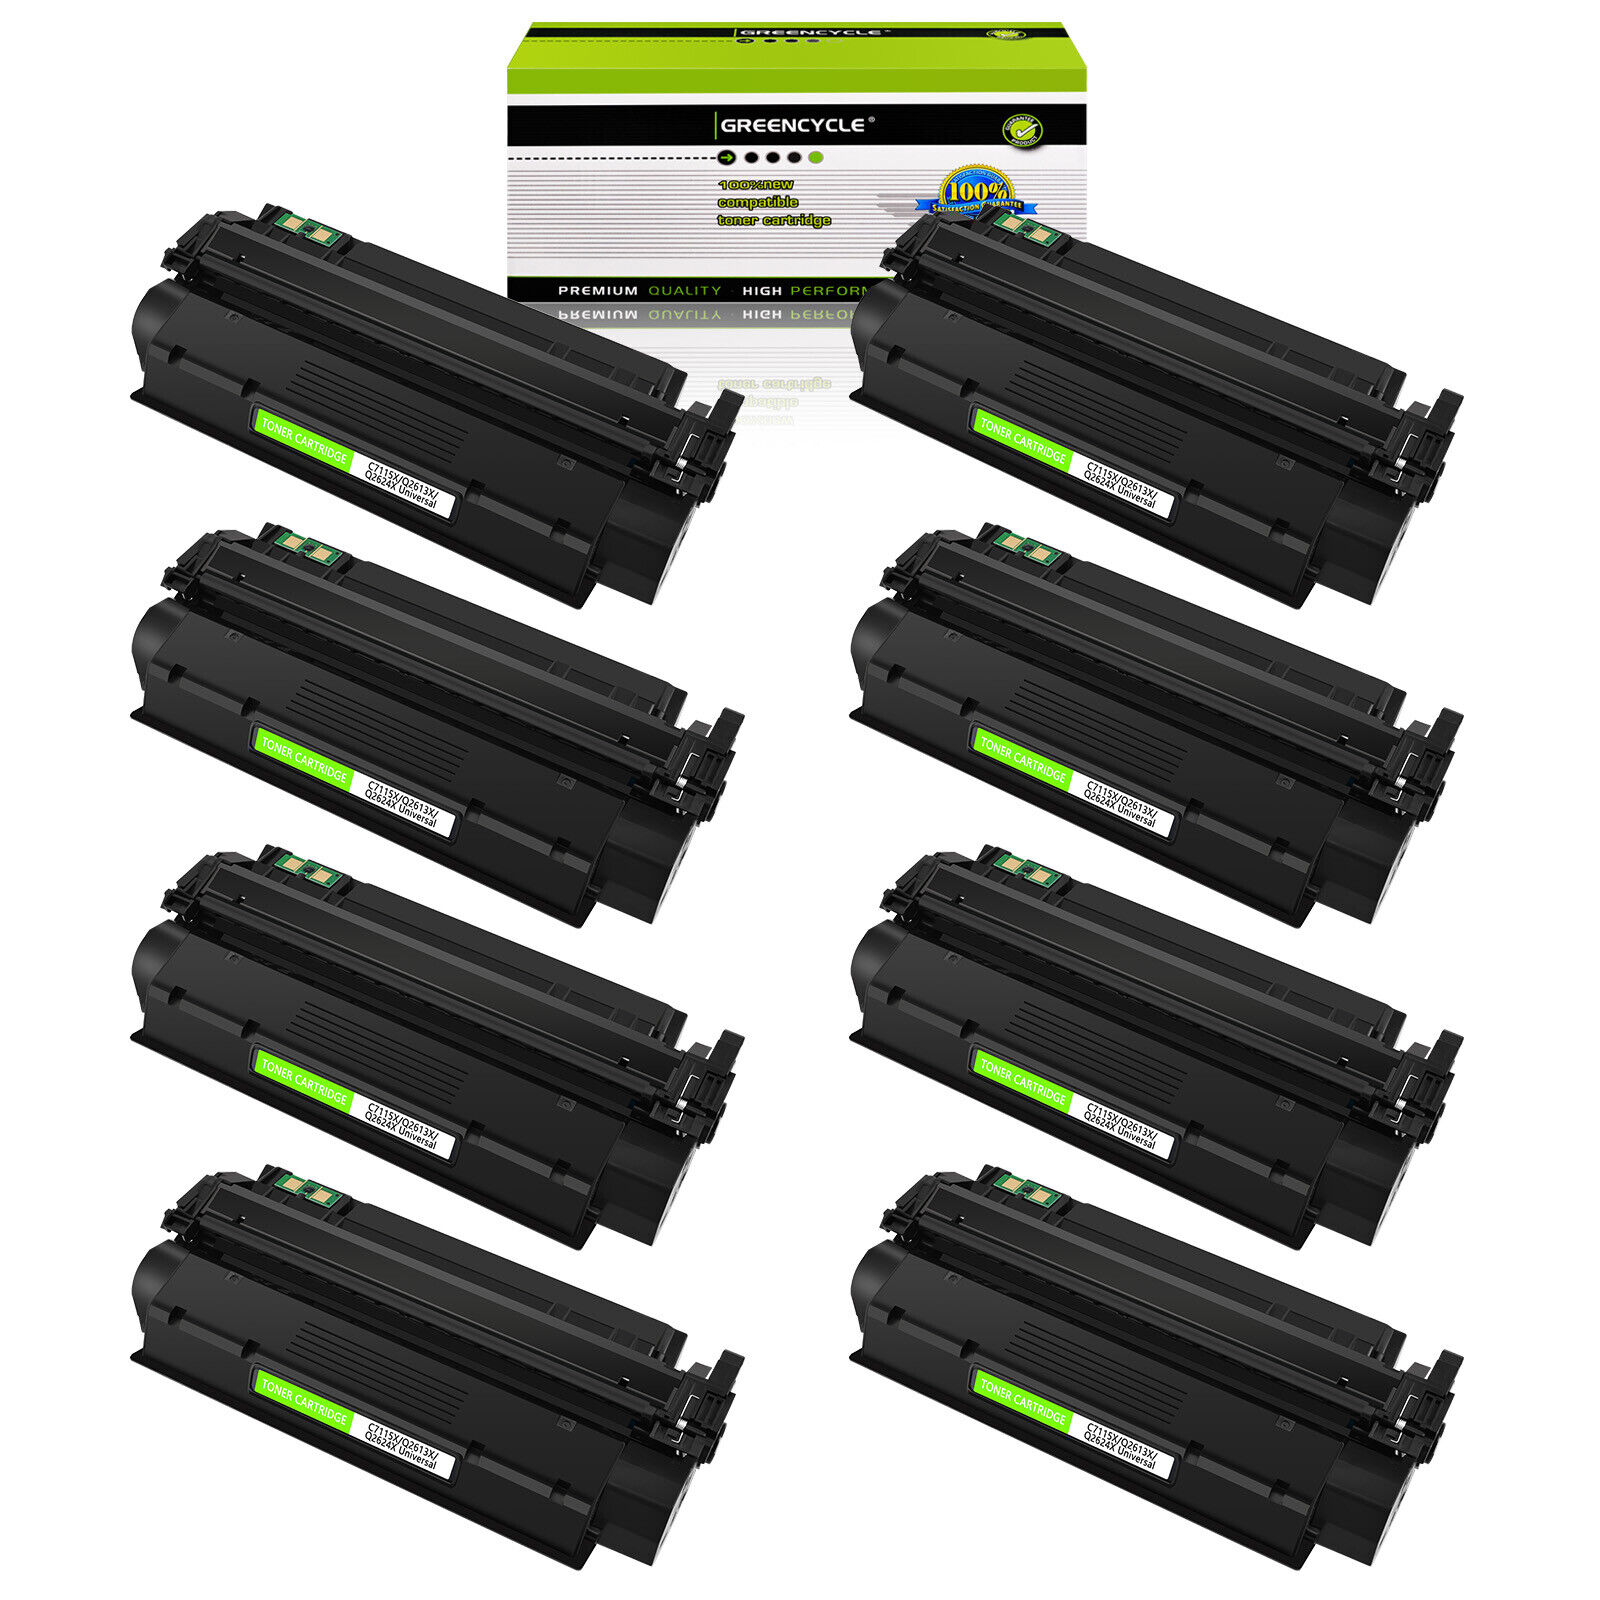 8 Pack Compatible For HP Laserjet 1300 1300N Q2613X Black Laser Toner Cartridges